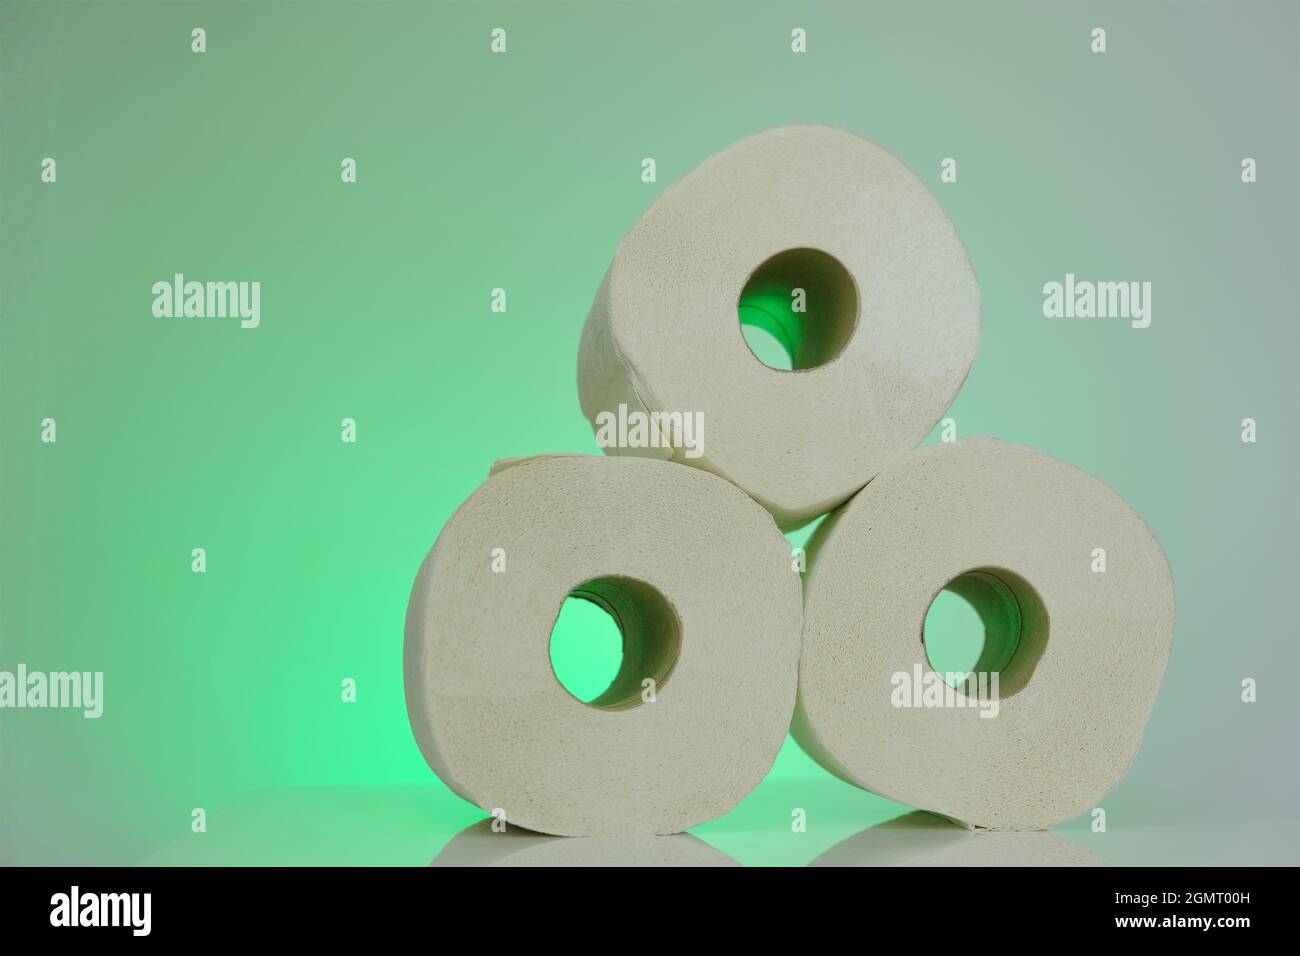 Rotoli di carta igienica .Bio rotoli di carta igienica organica impostati su sfondo verde chiaro.igiene e concetto di pulizia Foto Stock